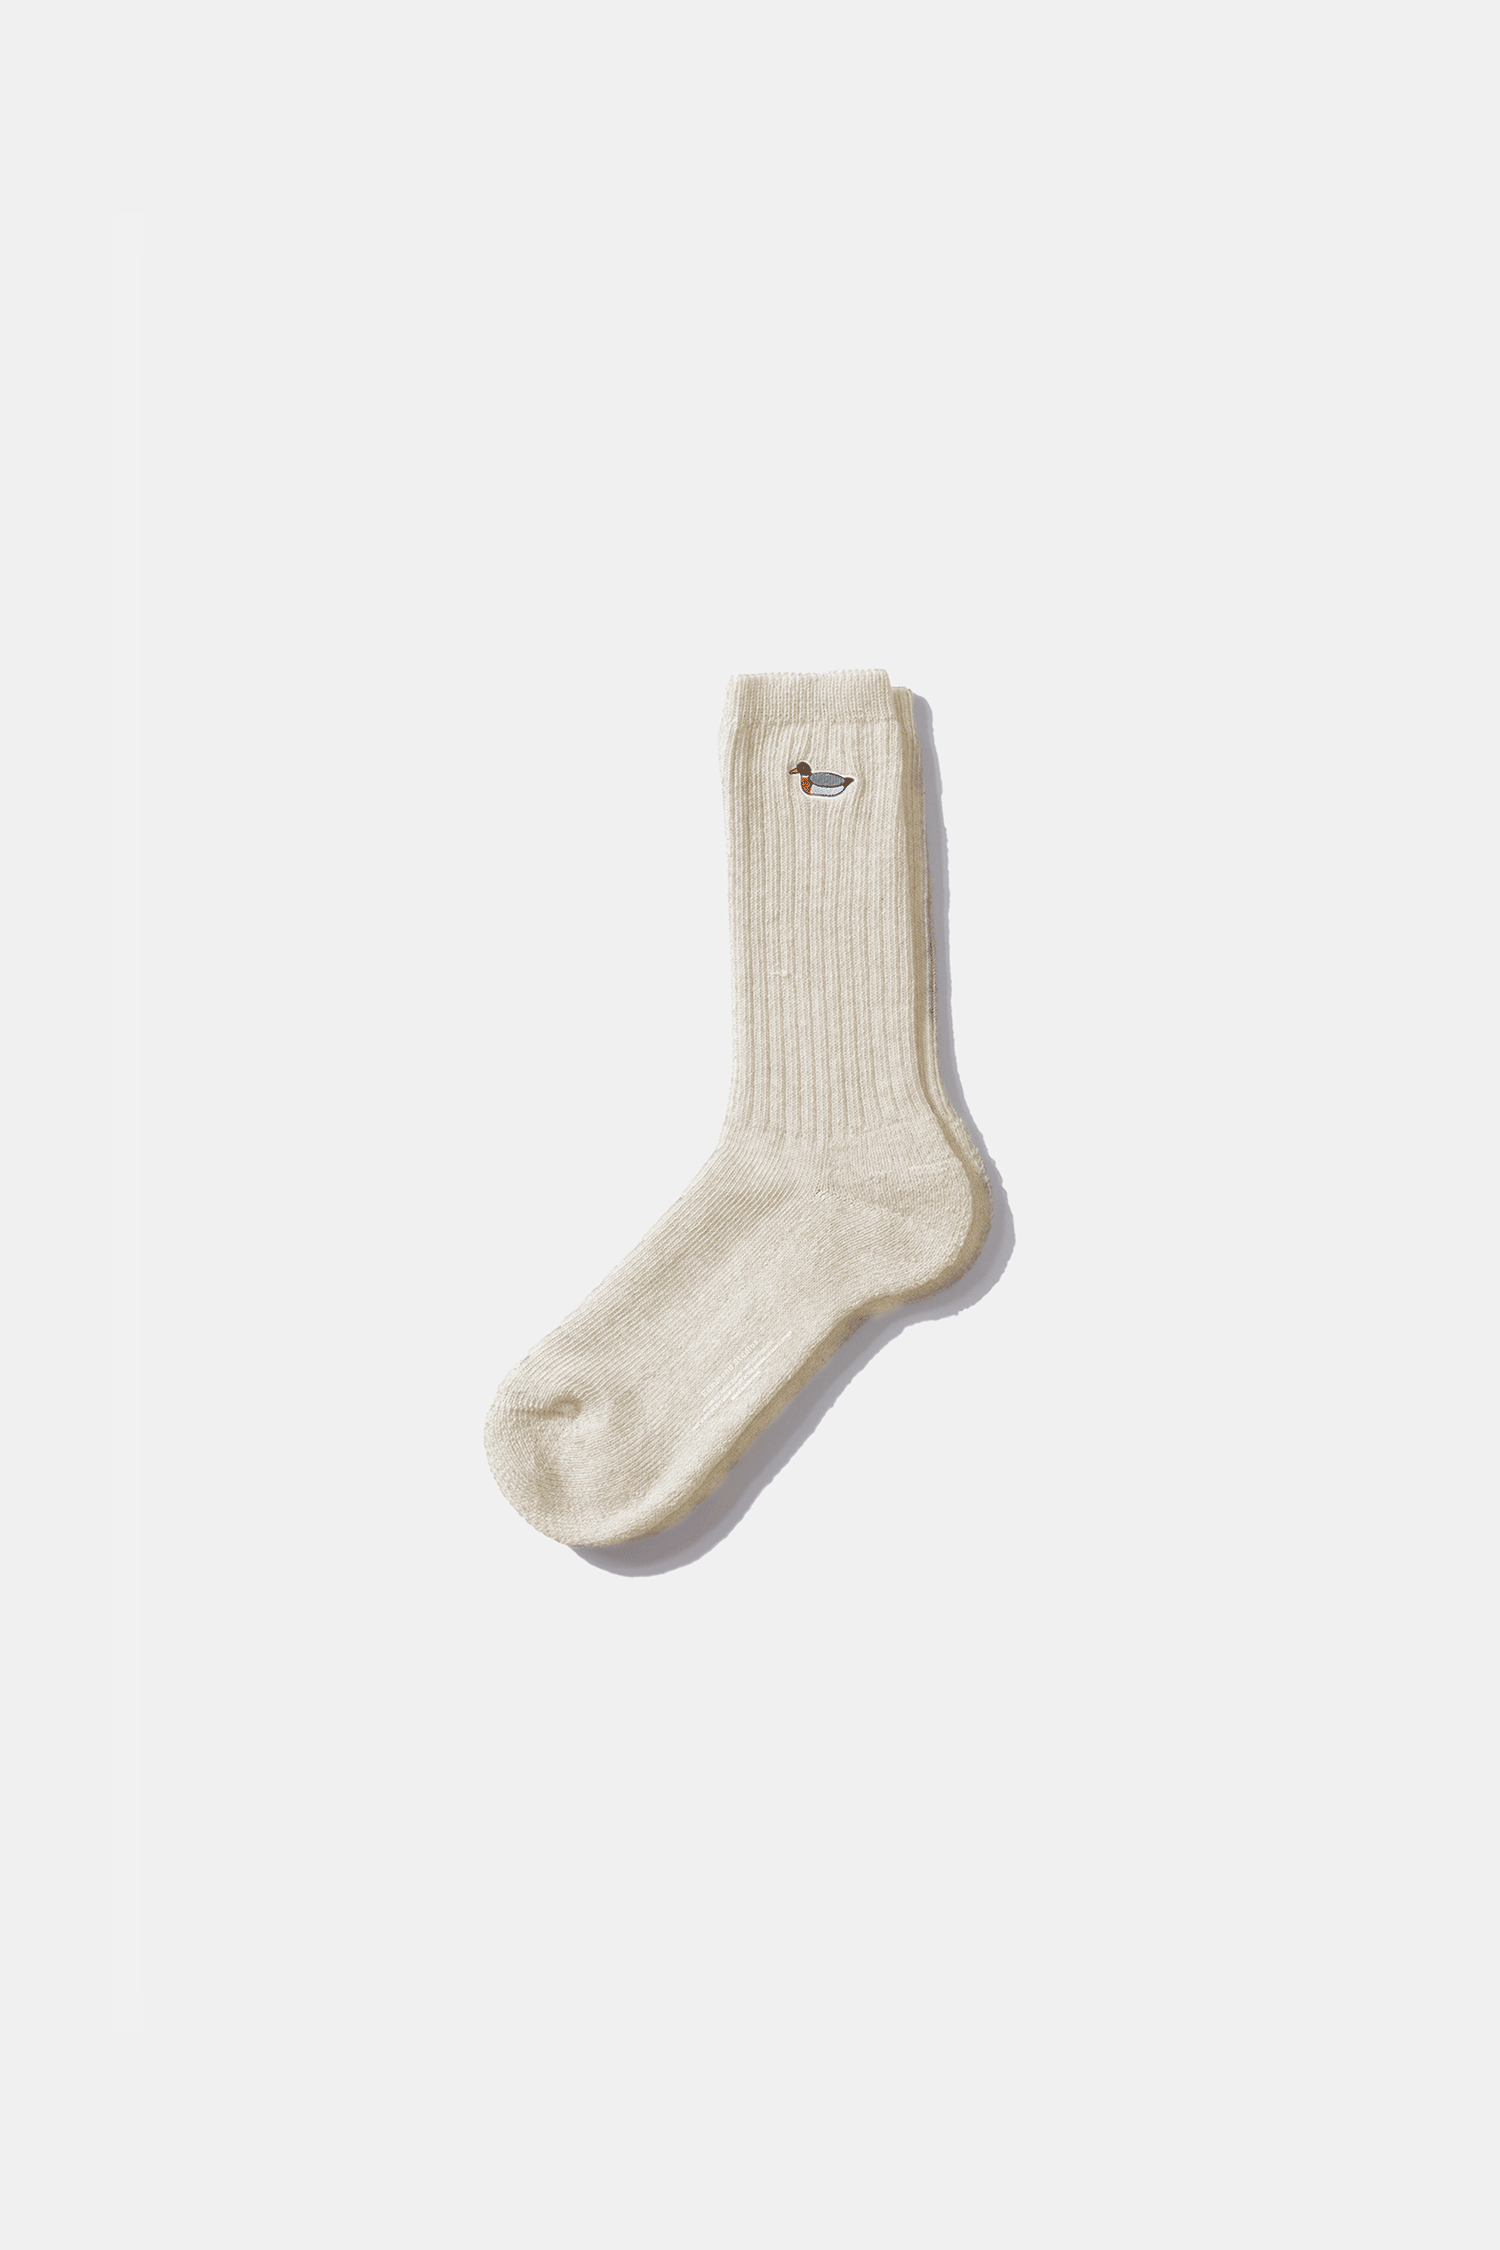 edmmond-studio-off-white-duck-socks